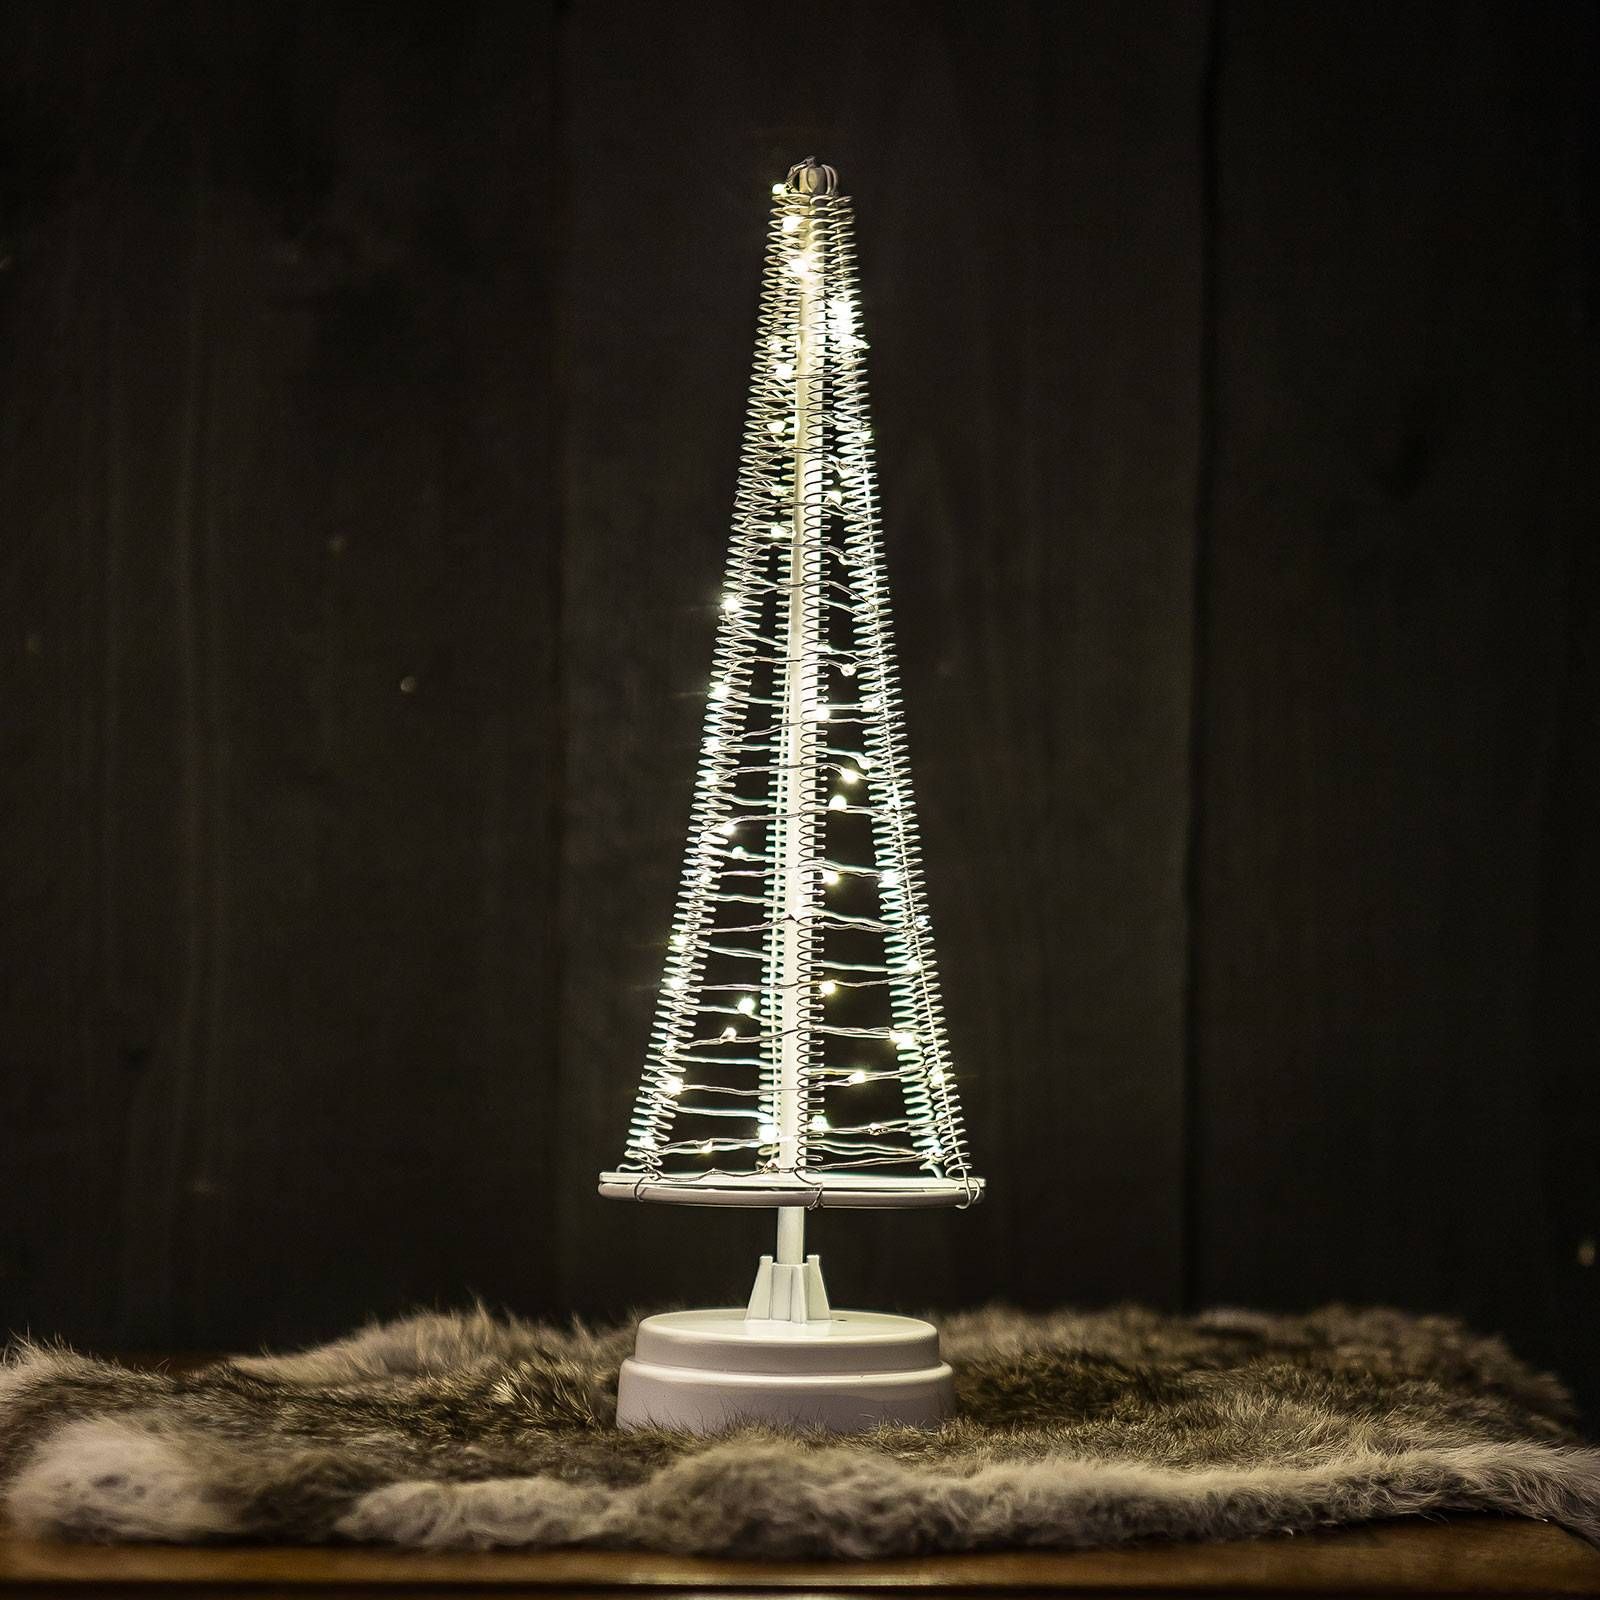 Hemsson Strom Santa's Tree, strieborný drôt výška 33, 5 cm, ABS plast, oceľ potiahnutá práškom, meď, K: 33.5cm